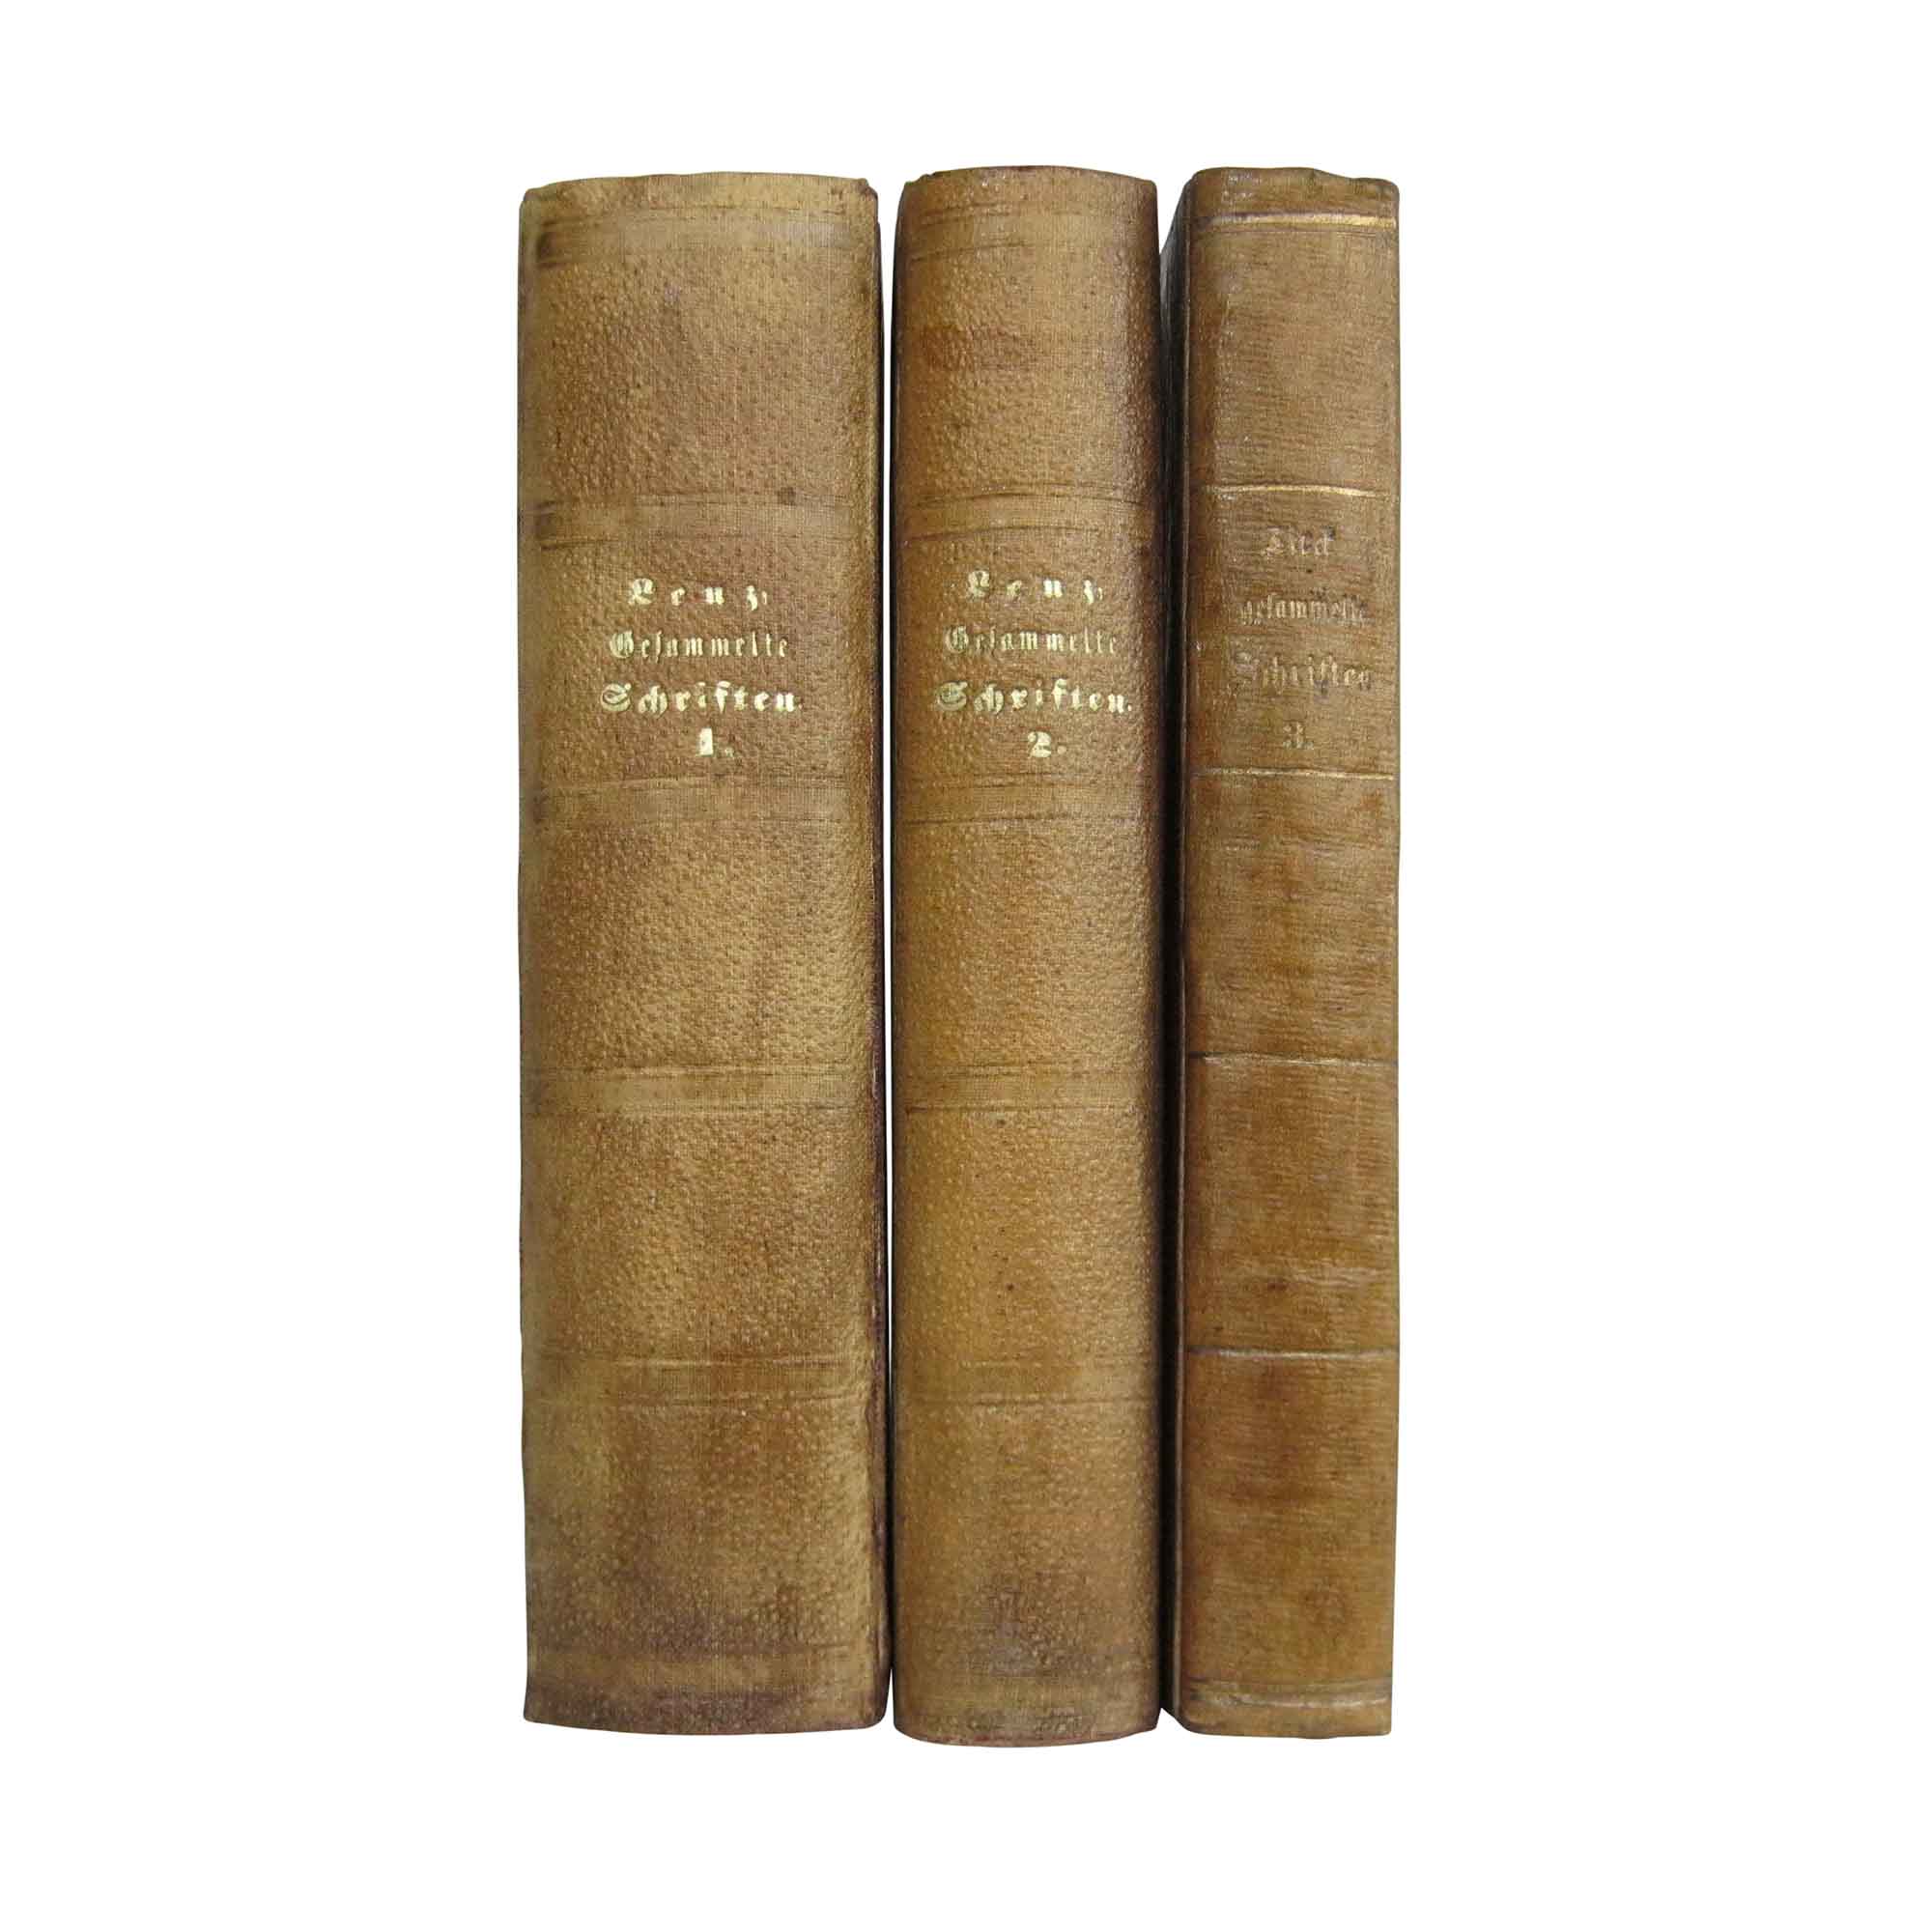 Gesammelte Schriften. Herausgegeben von Ludwig Tieck. 3 Bände.